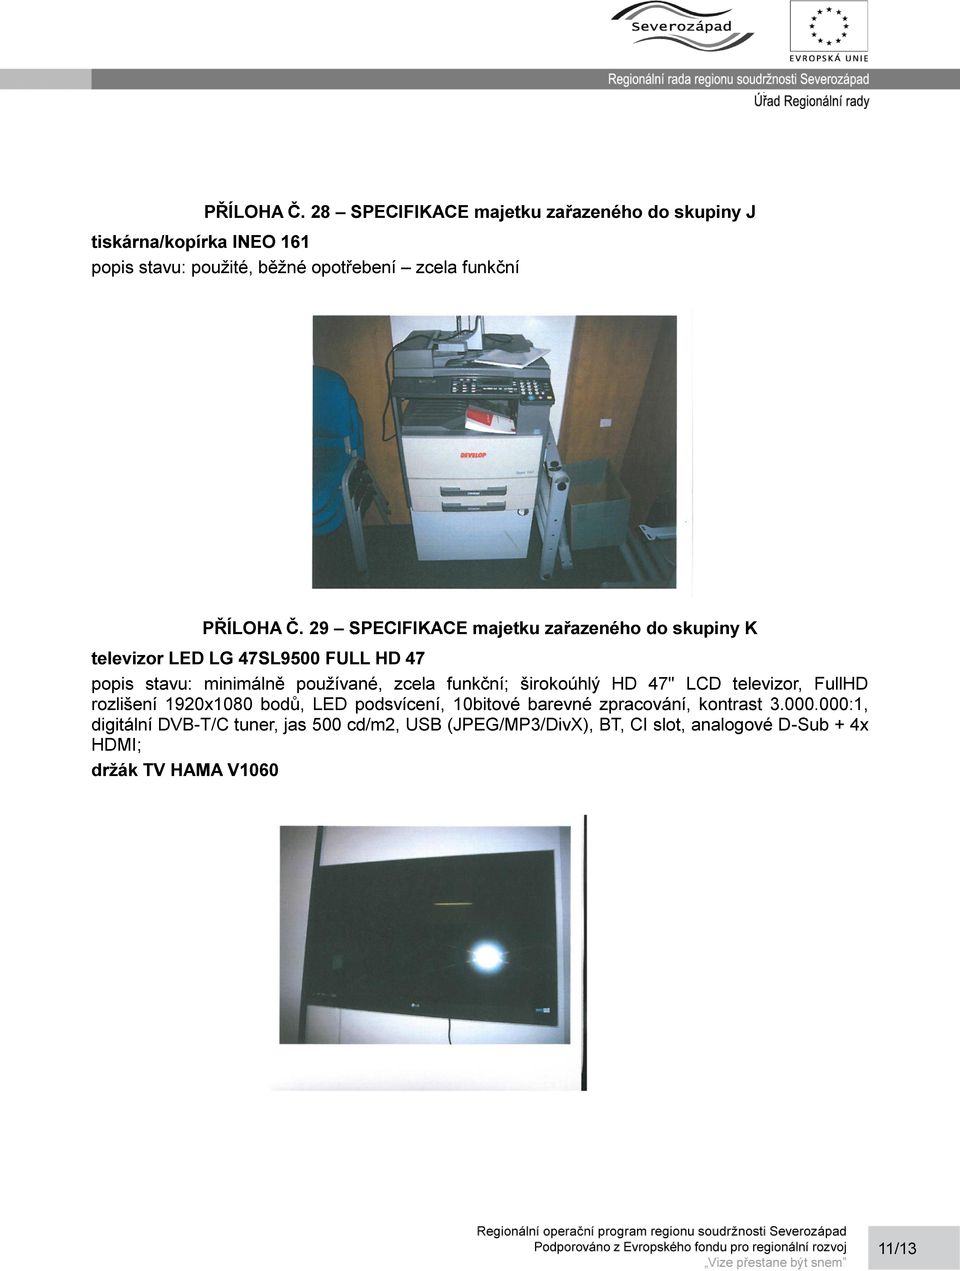 SPECIFIKACE majetku zařazeného do skupiny K televizor LED LG 47SL9500 FULL HD 47 popis stavu: minimálně používané, zcela funkční;